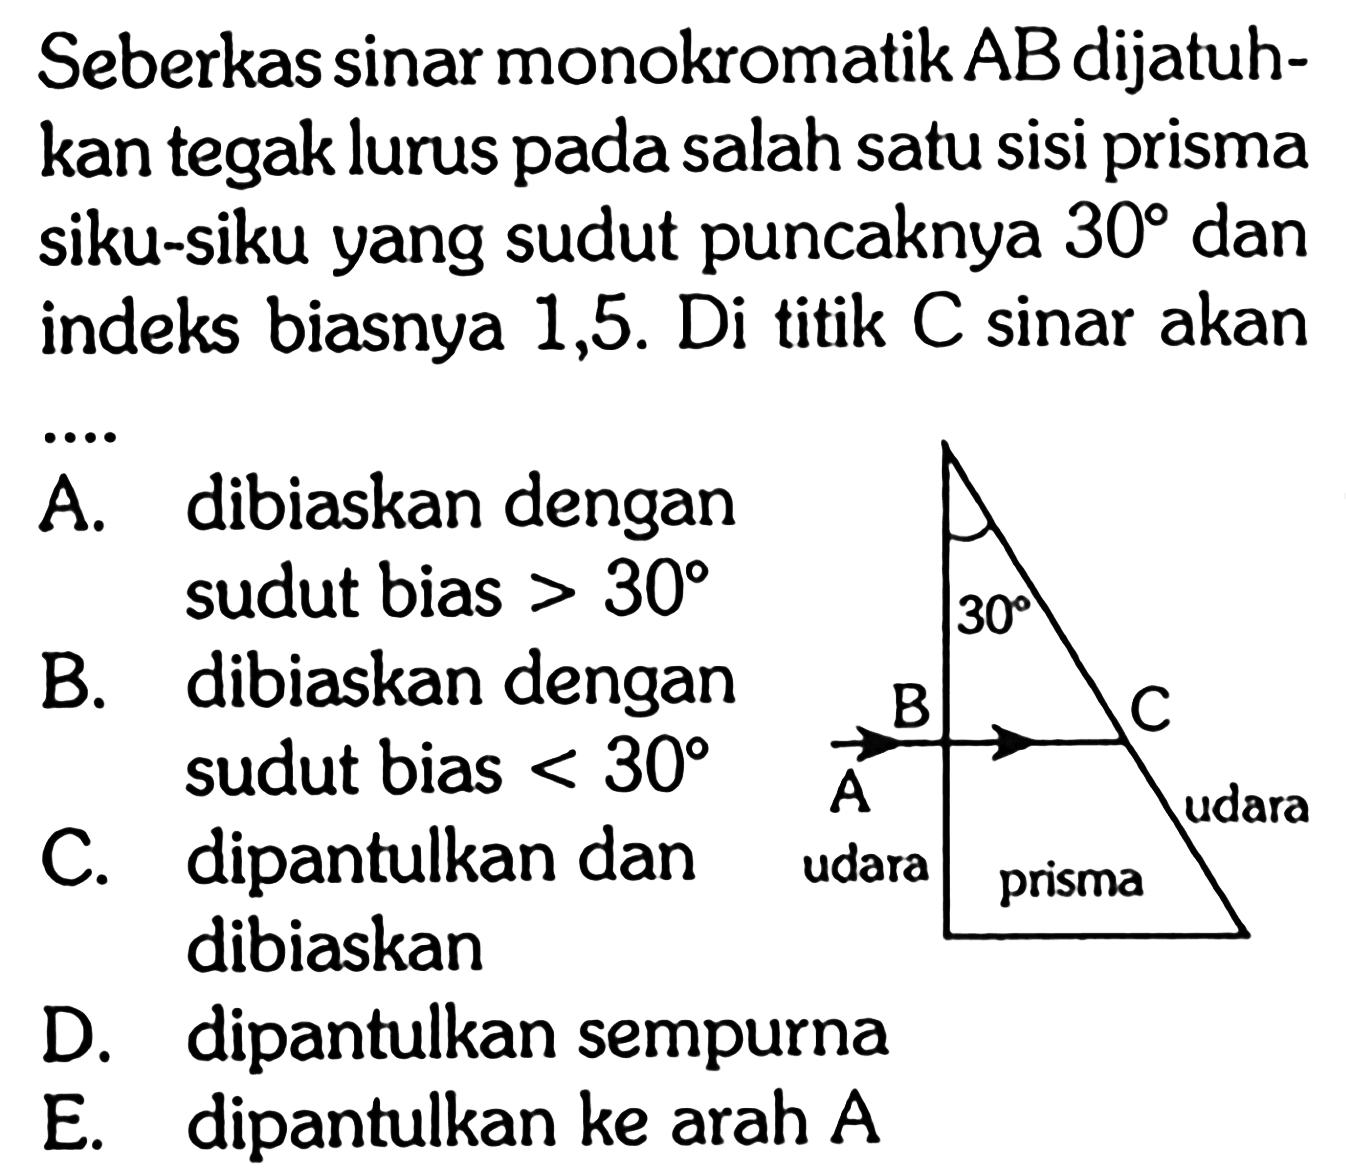 Seberkas sinar monokromatik AB dijatuhkan tegak lurus pada salah satu sisi prisma siku-siku yang sudut puncaknya 30 dan indeks biasnya 1,5. Di titik C sinar akan .... 30 A B C udara prisma udara A. dibiaskan dengan sudut bias >30 B. dibiaskan dengan sudut bias <30 C. dipantulkan dan dibiaskan D. dipantulkan sempurna E. dipantulkan ke arah A